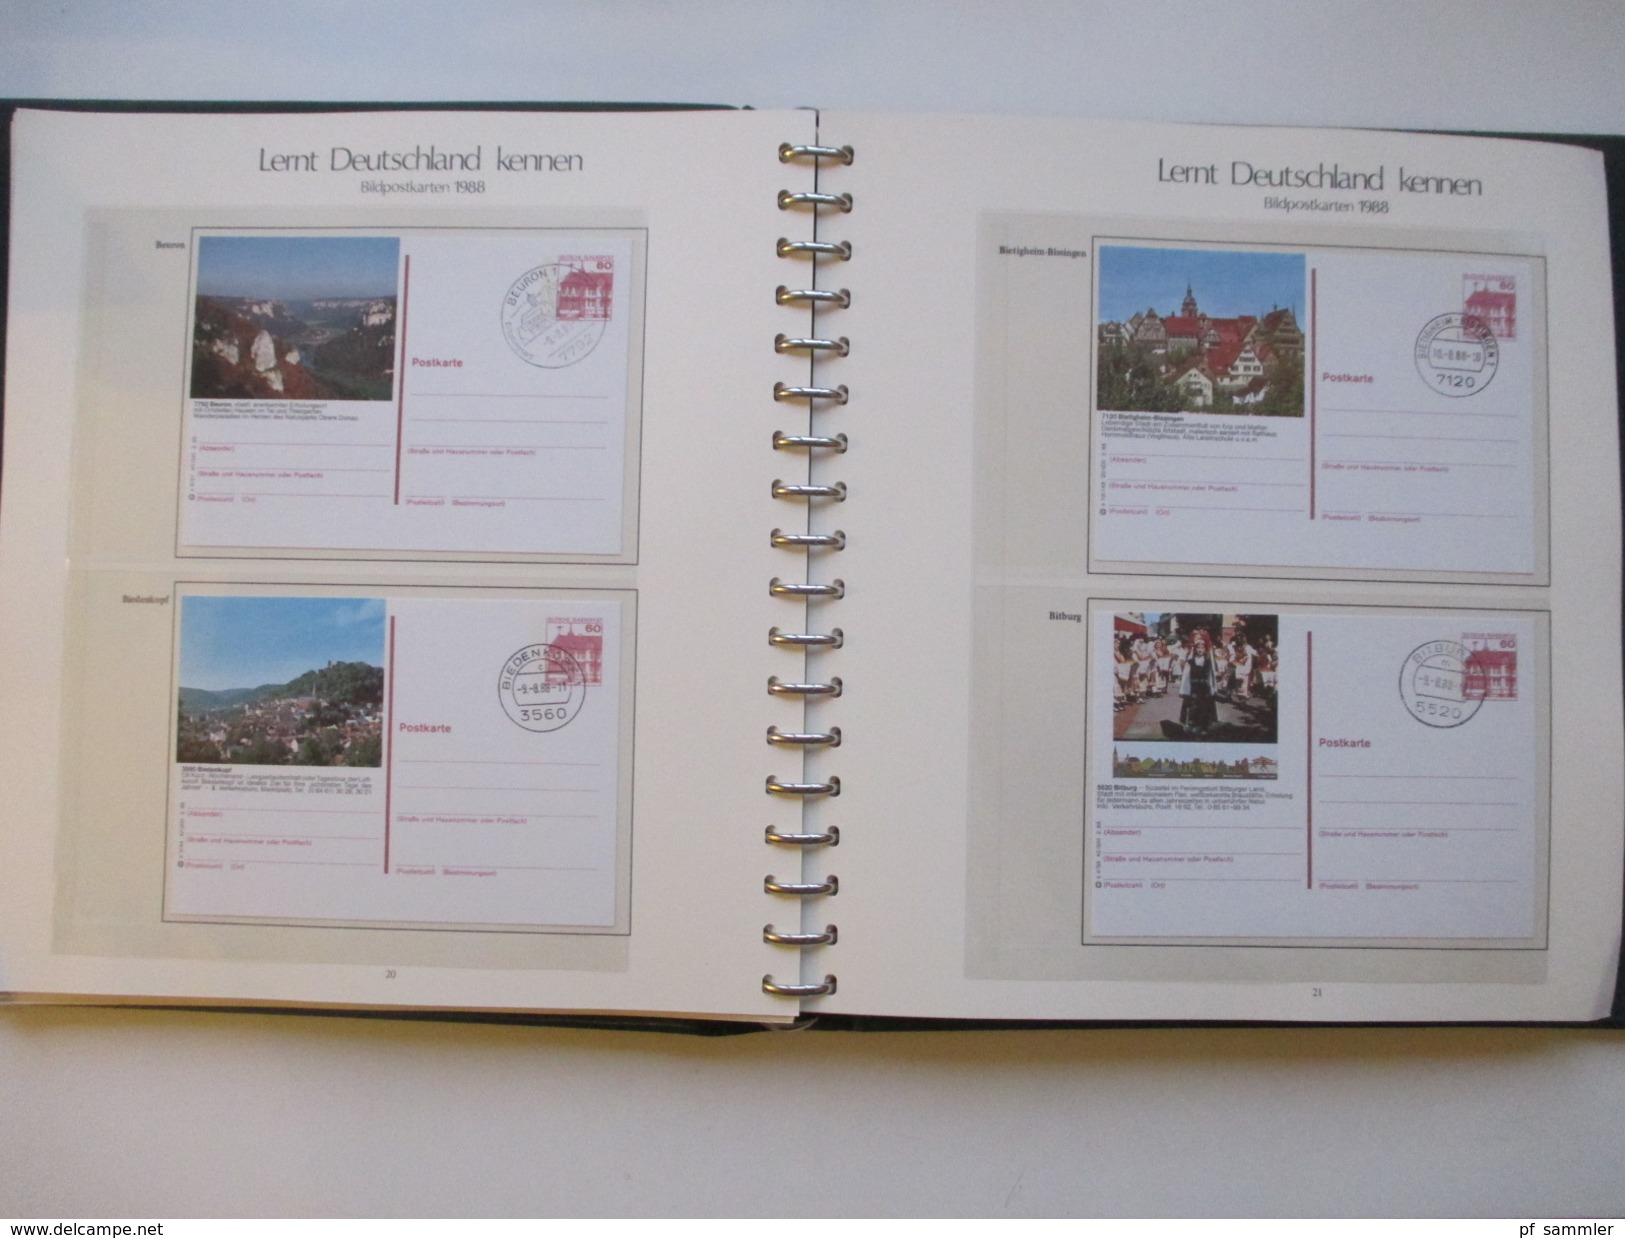 Ganzsachen / Bildpostkarten Lernt Deutschland Kennen 1977 - 1998 mit 597 Karten in 5 VD Alben. Aboware von Sieger!